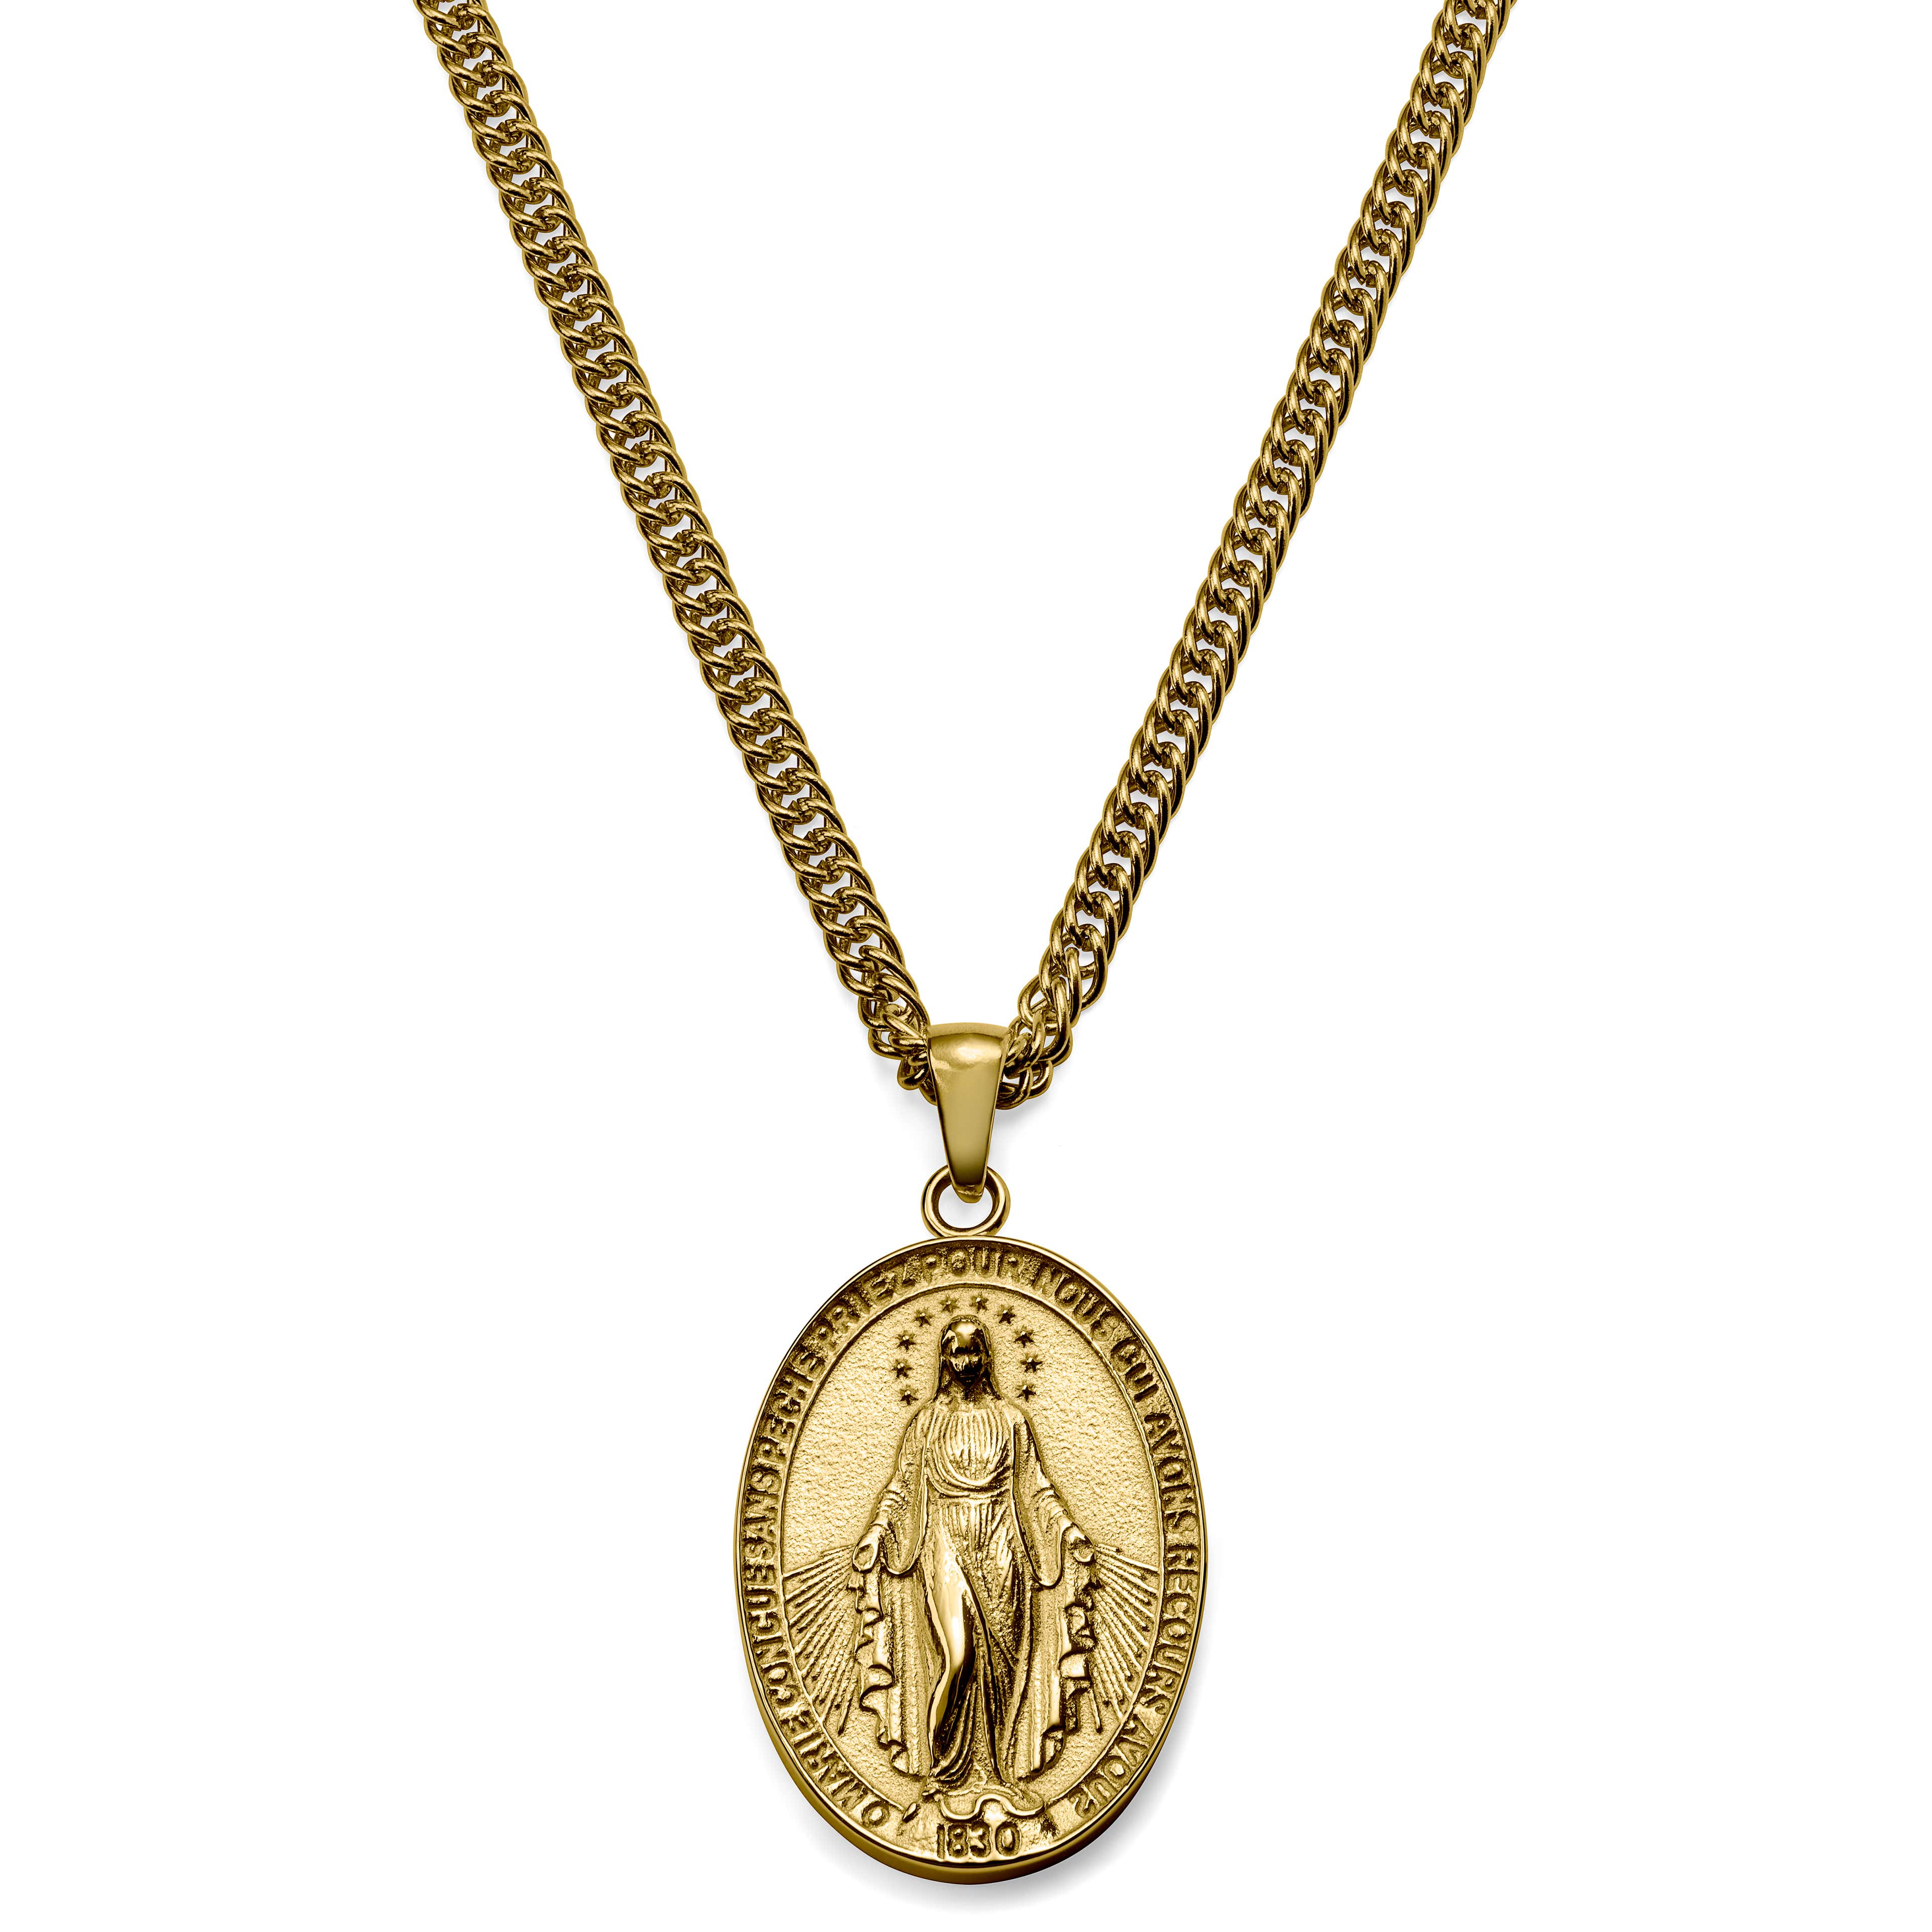 Sanctus | Colar Medalha Milagrosa Dourada